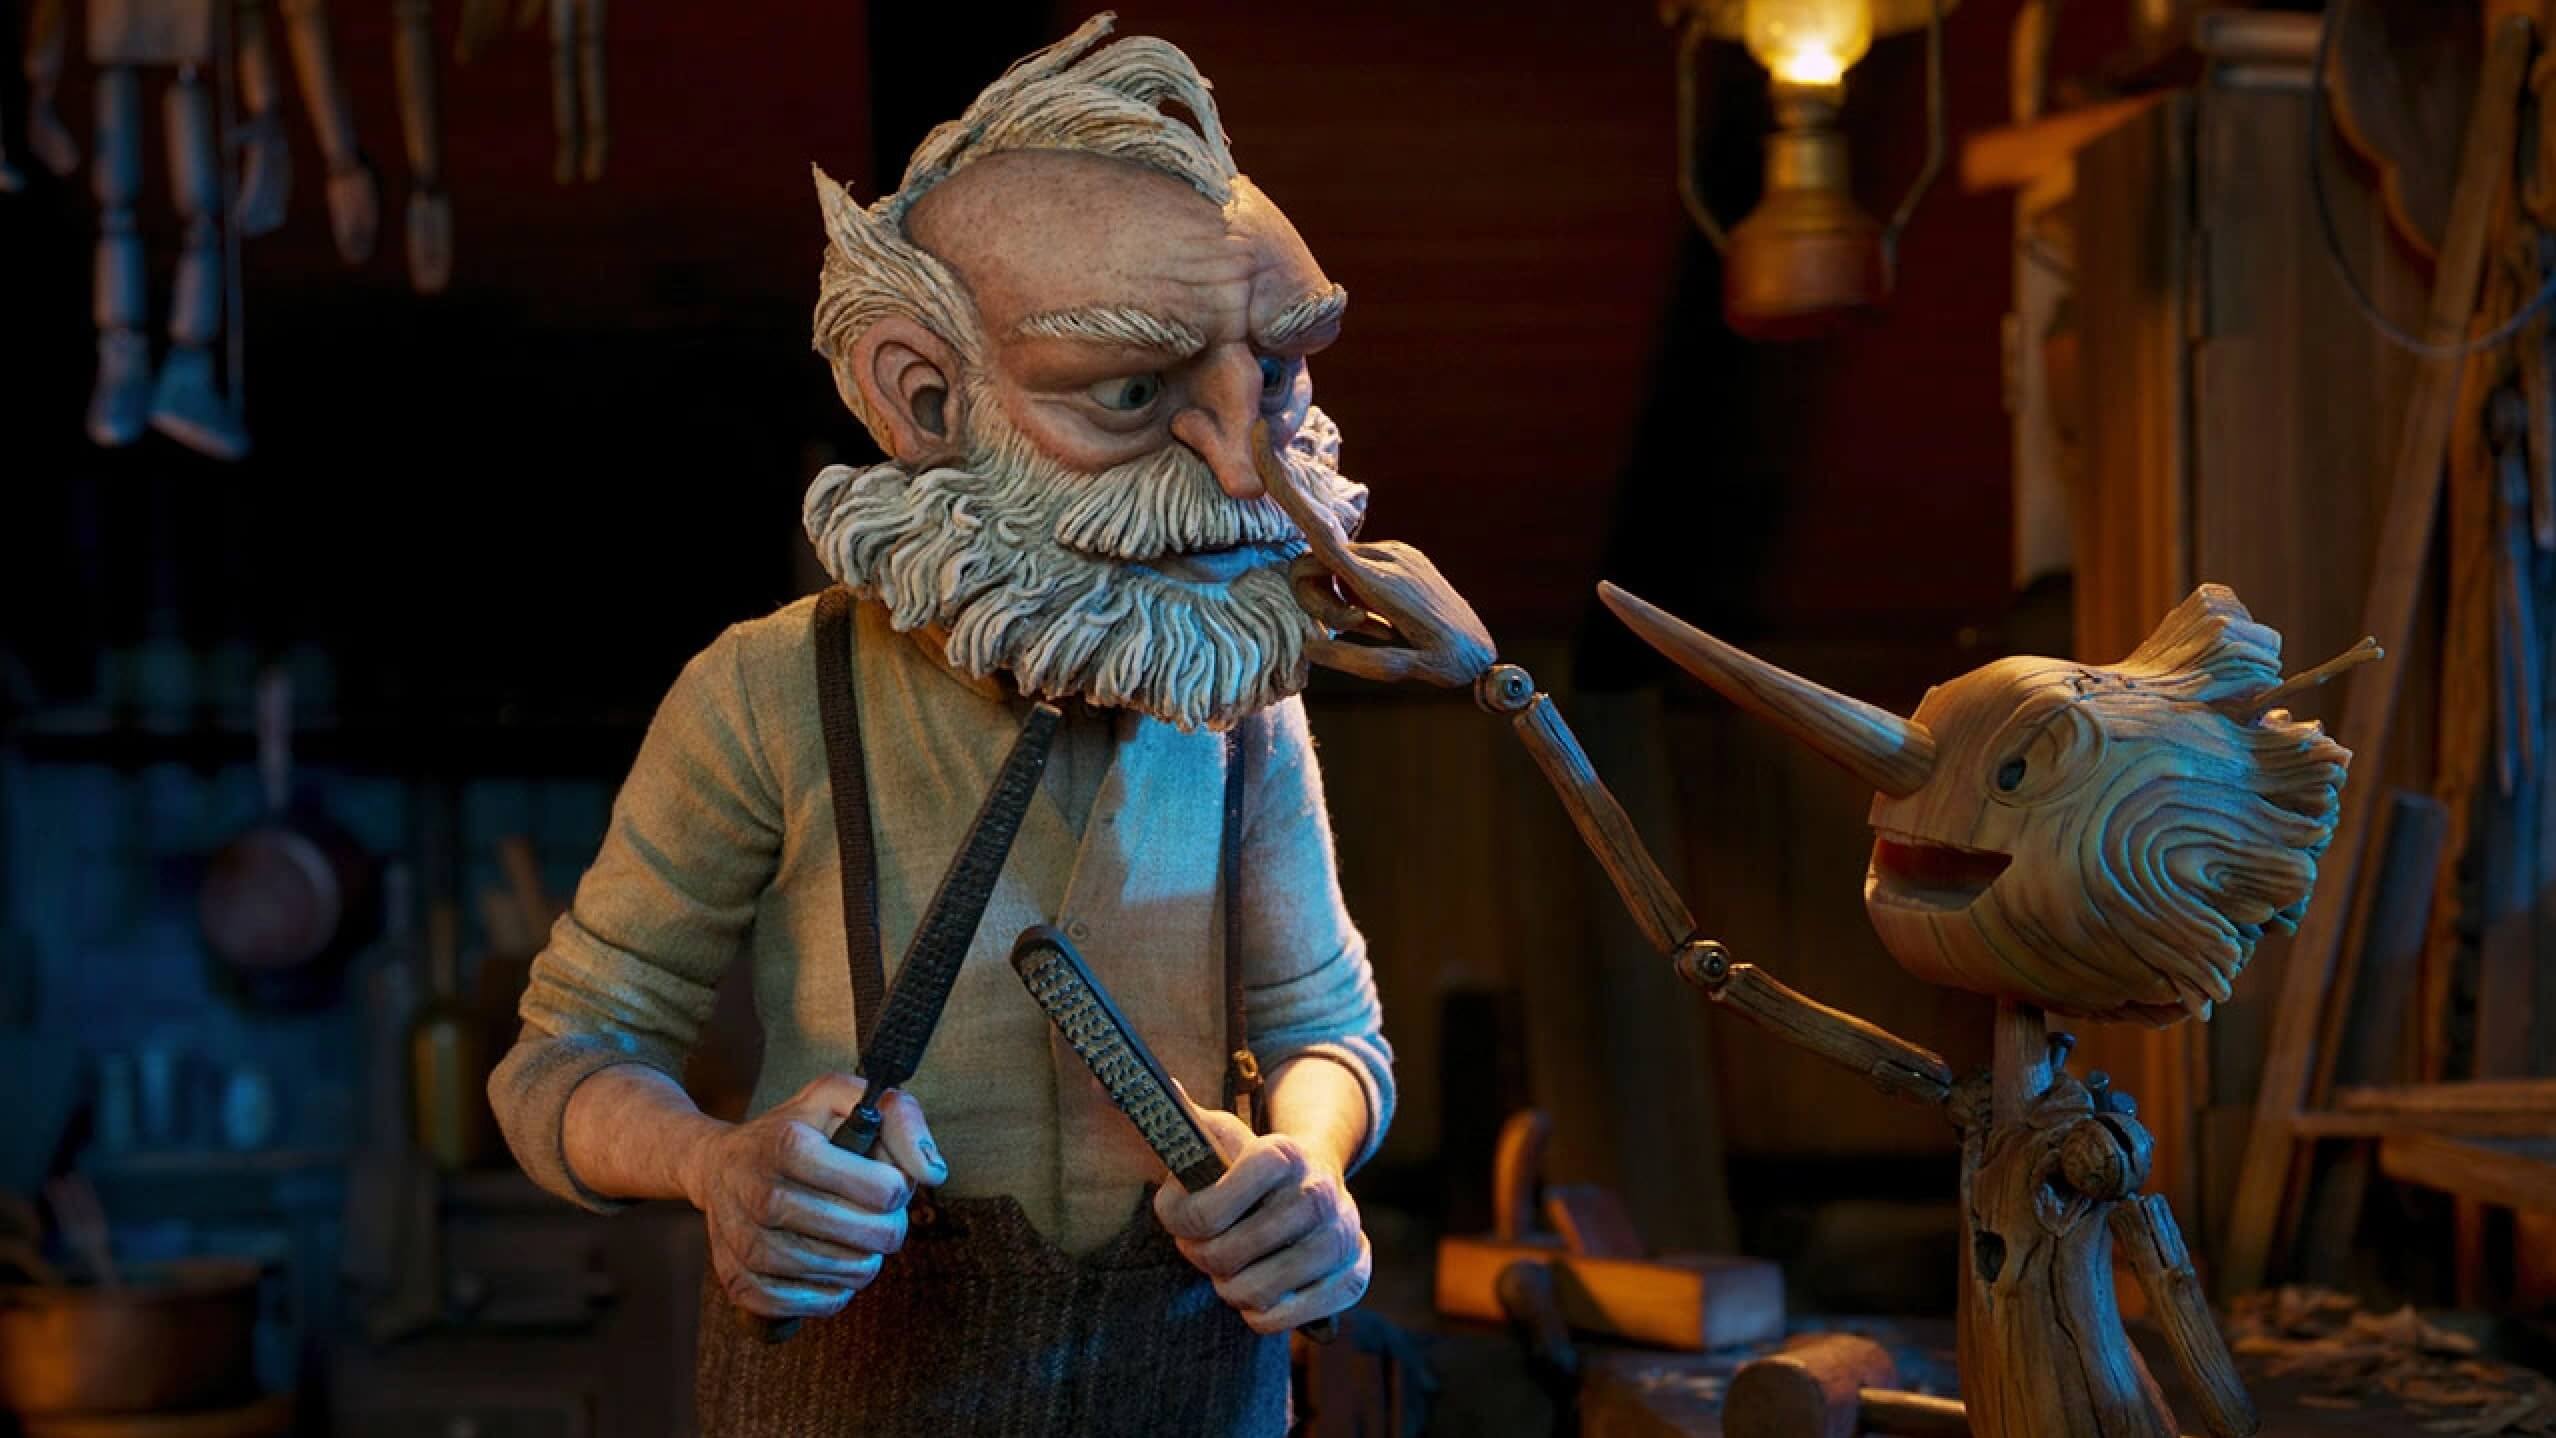 Guillermo del Toro's Pinocchio Netflix Original film